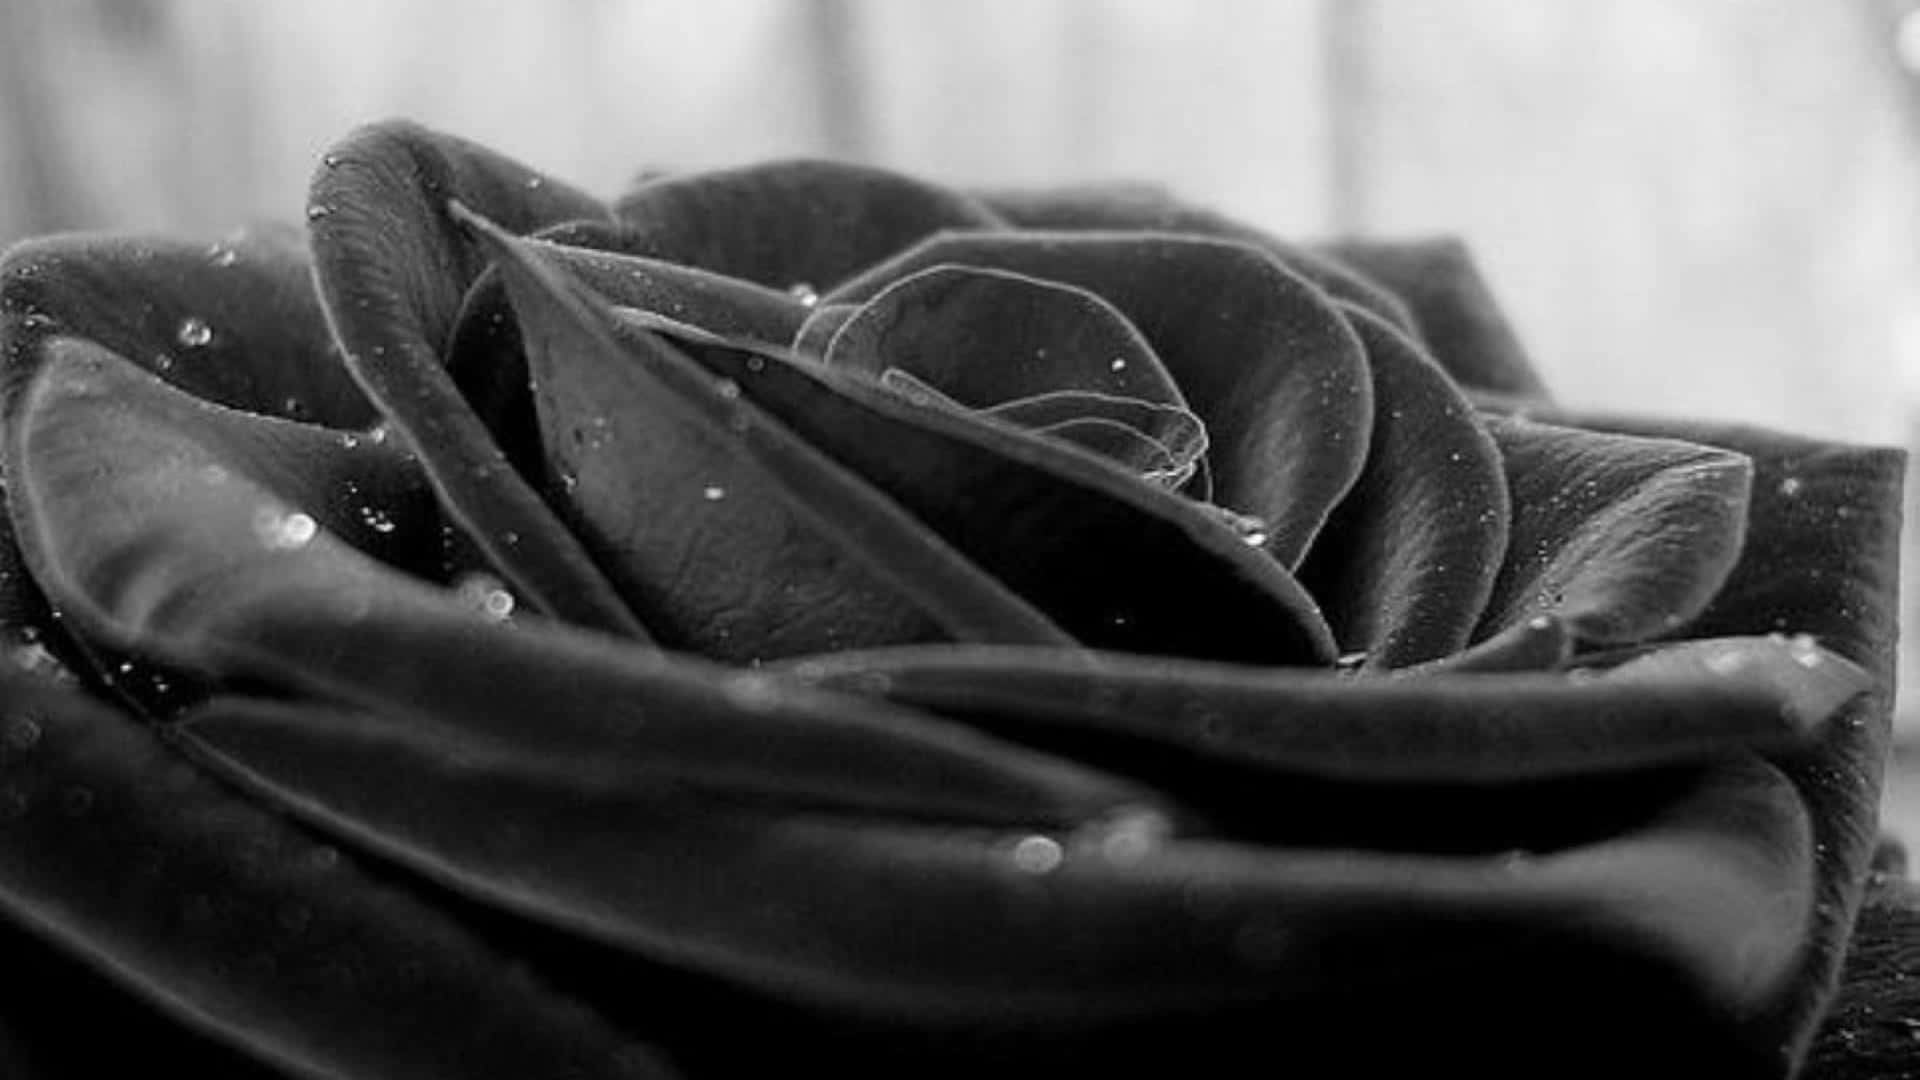 Unafotografía De Primer Plano De Una Rosa De Color Rojo Oscuro, Casi Negro.